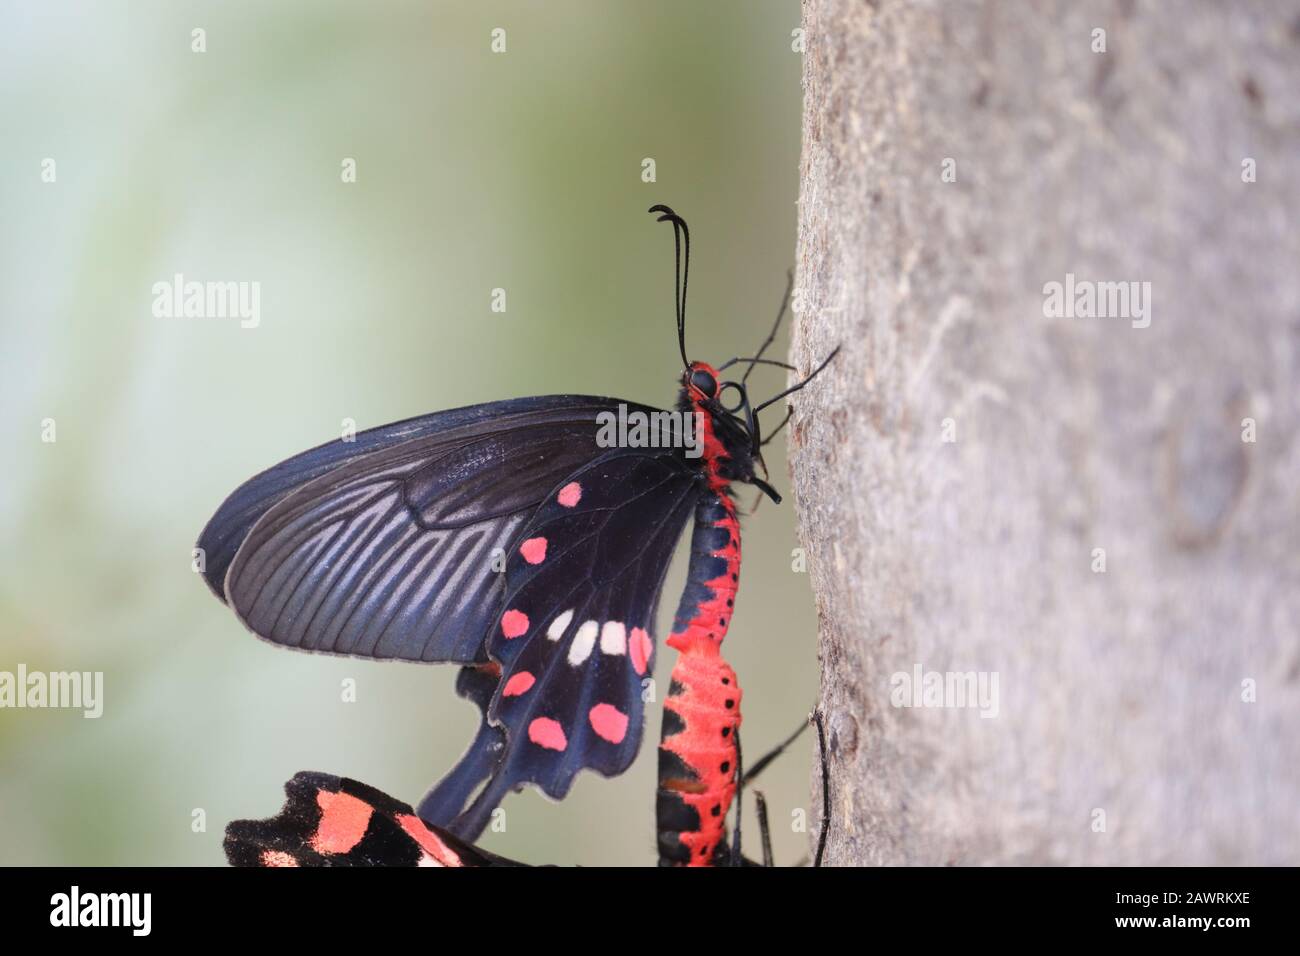 Primo piano di una farfalla nera maschio ali insetto farfalla e femmina farfalla riunione su gambo di albero nella stagione estiva di giorno, farfalla all'aperto o immagini di insetto Foto Stock